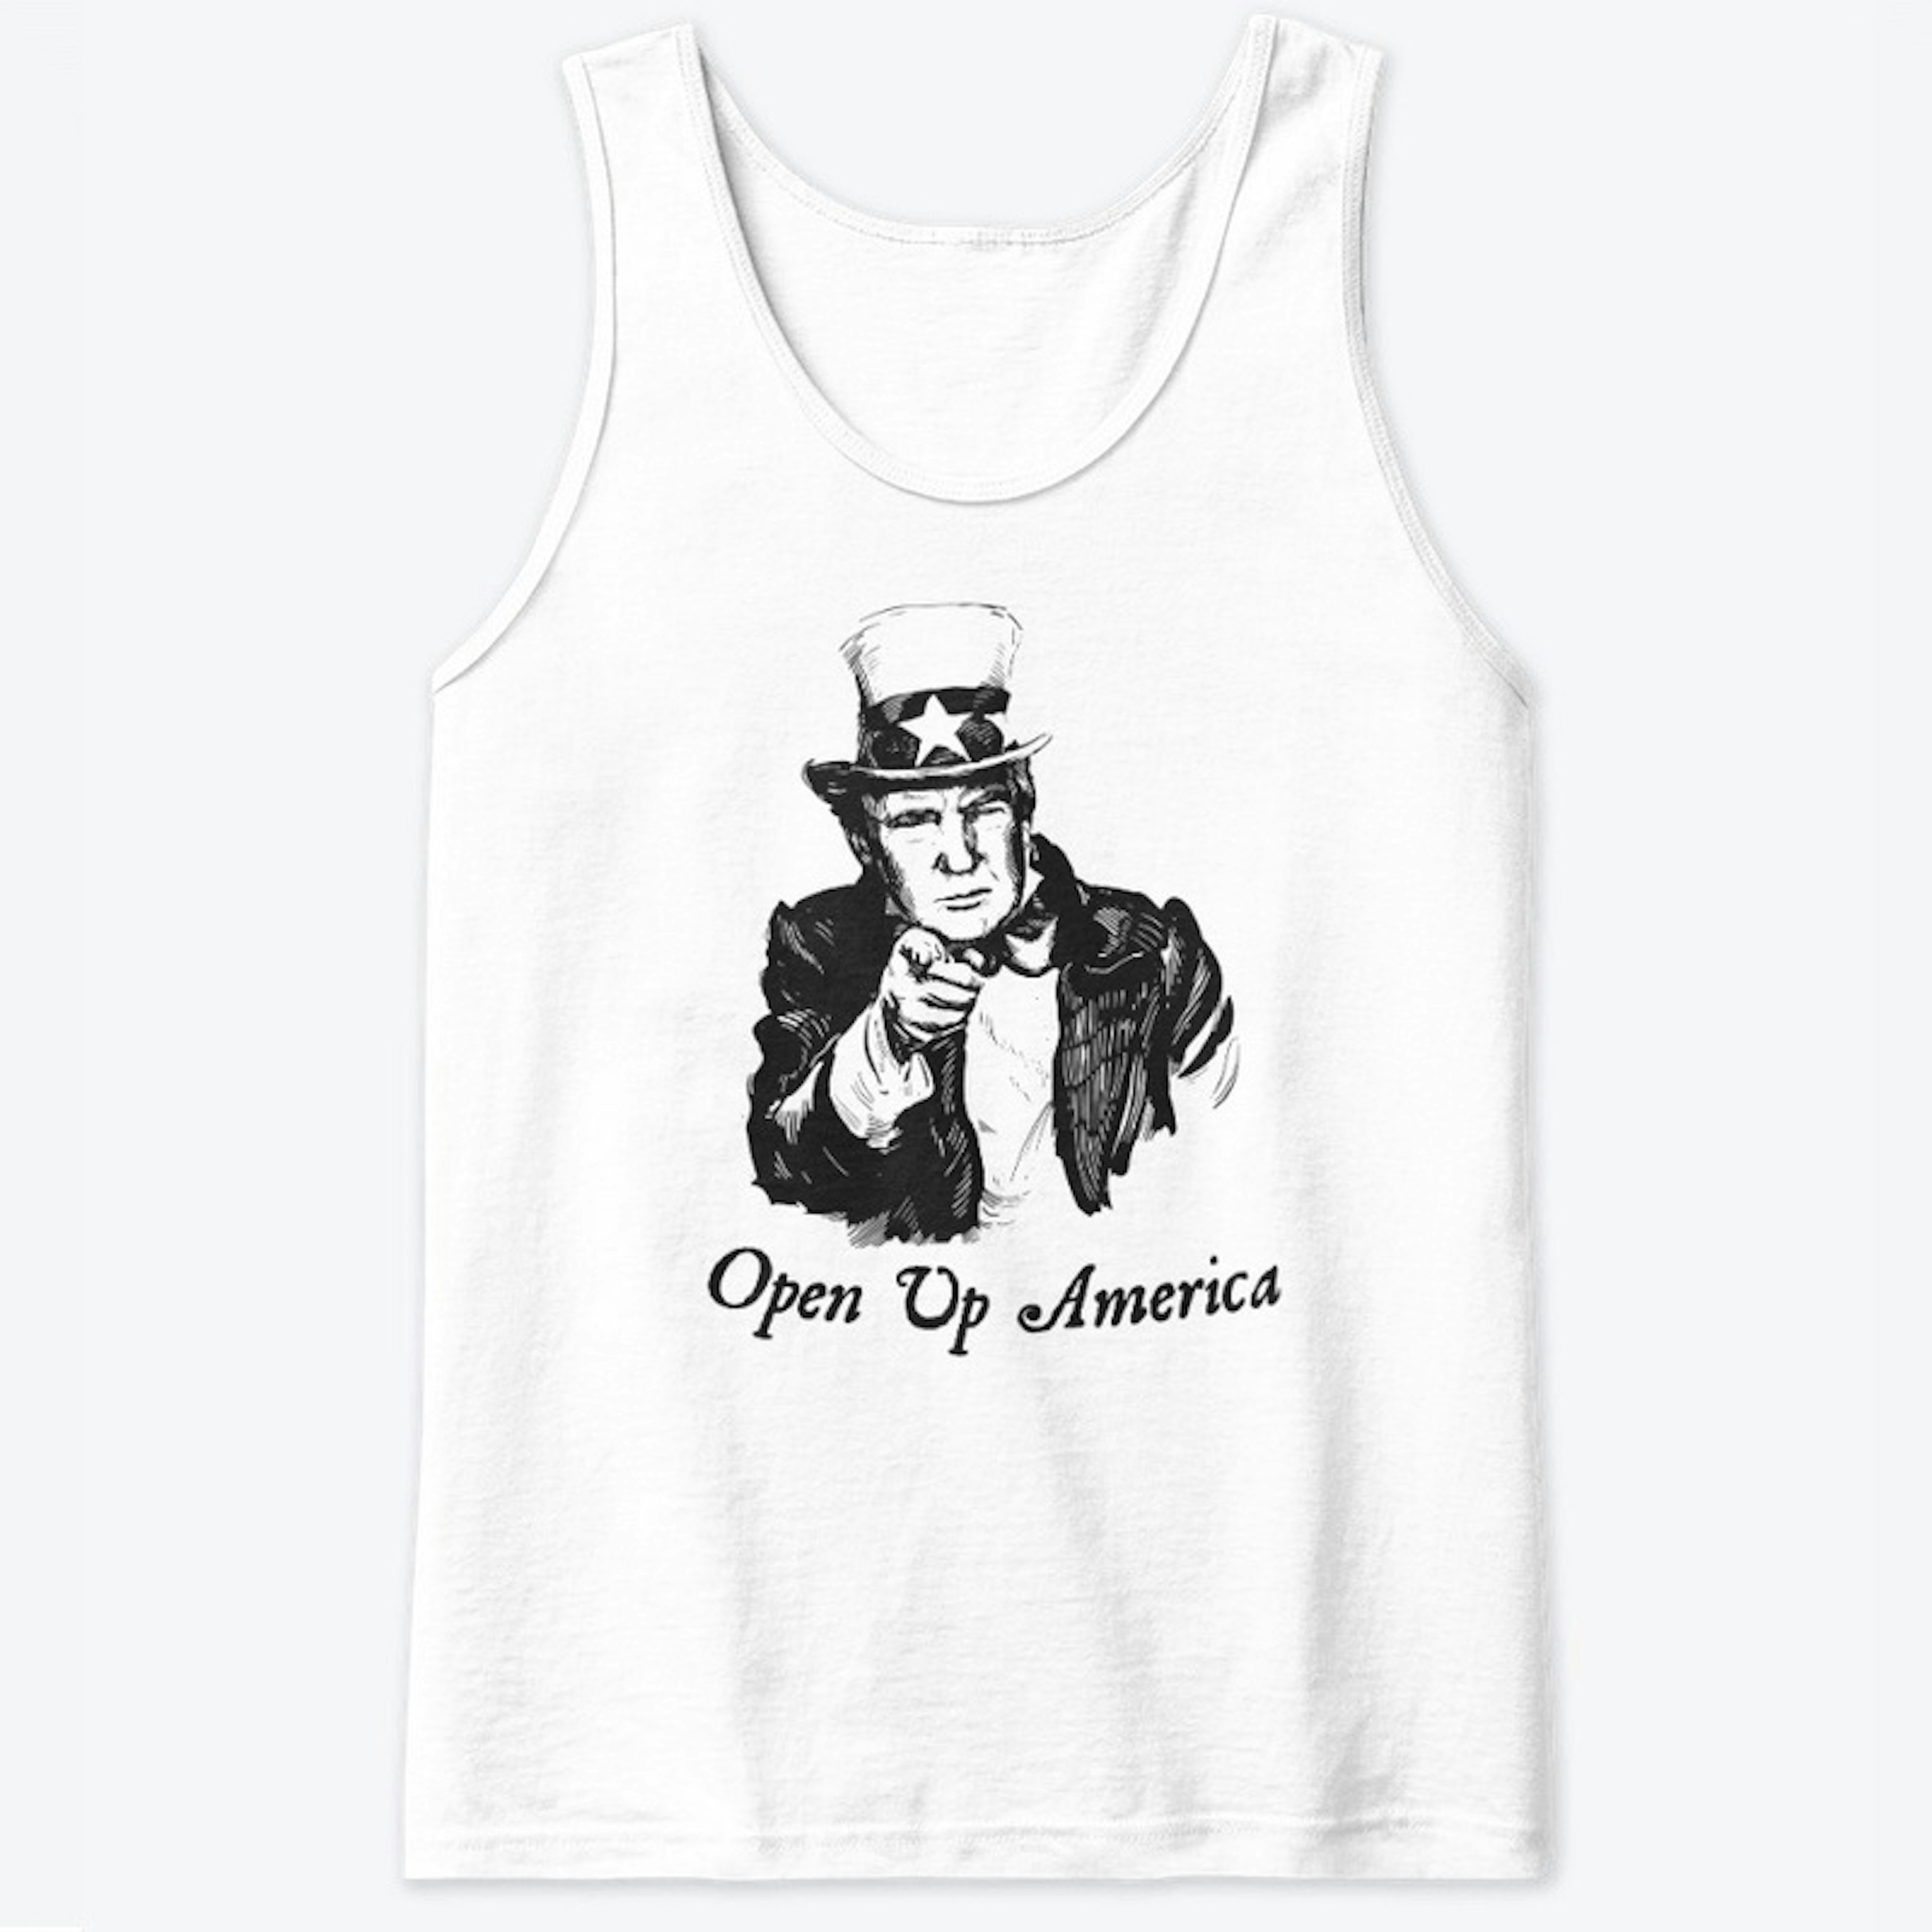 Open America Now!